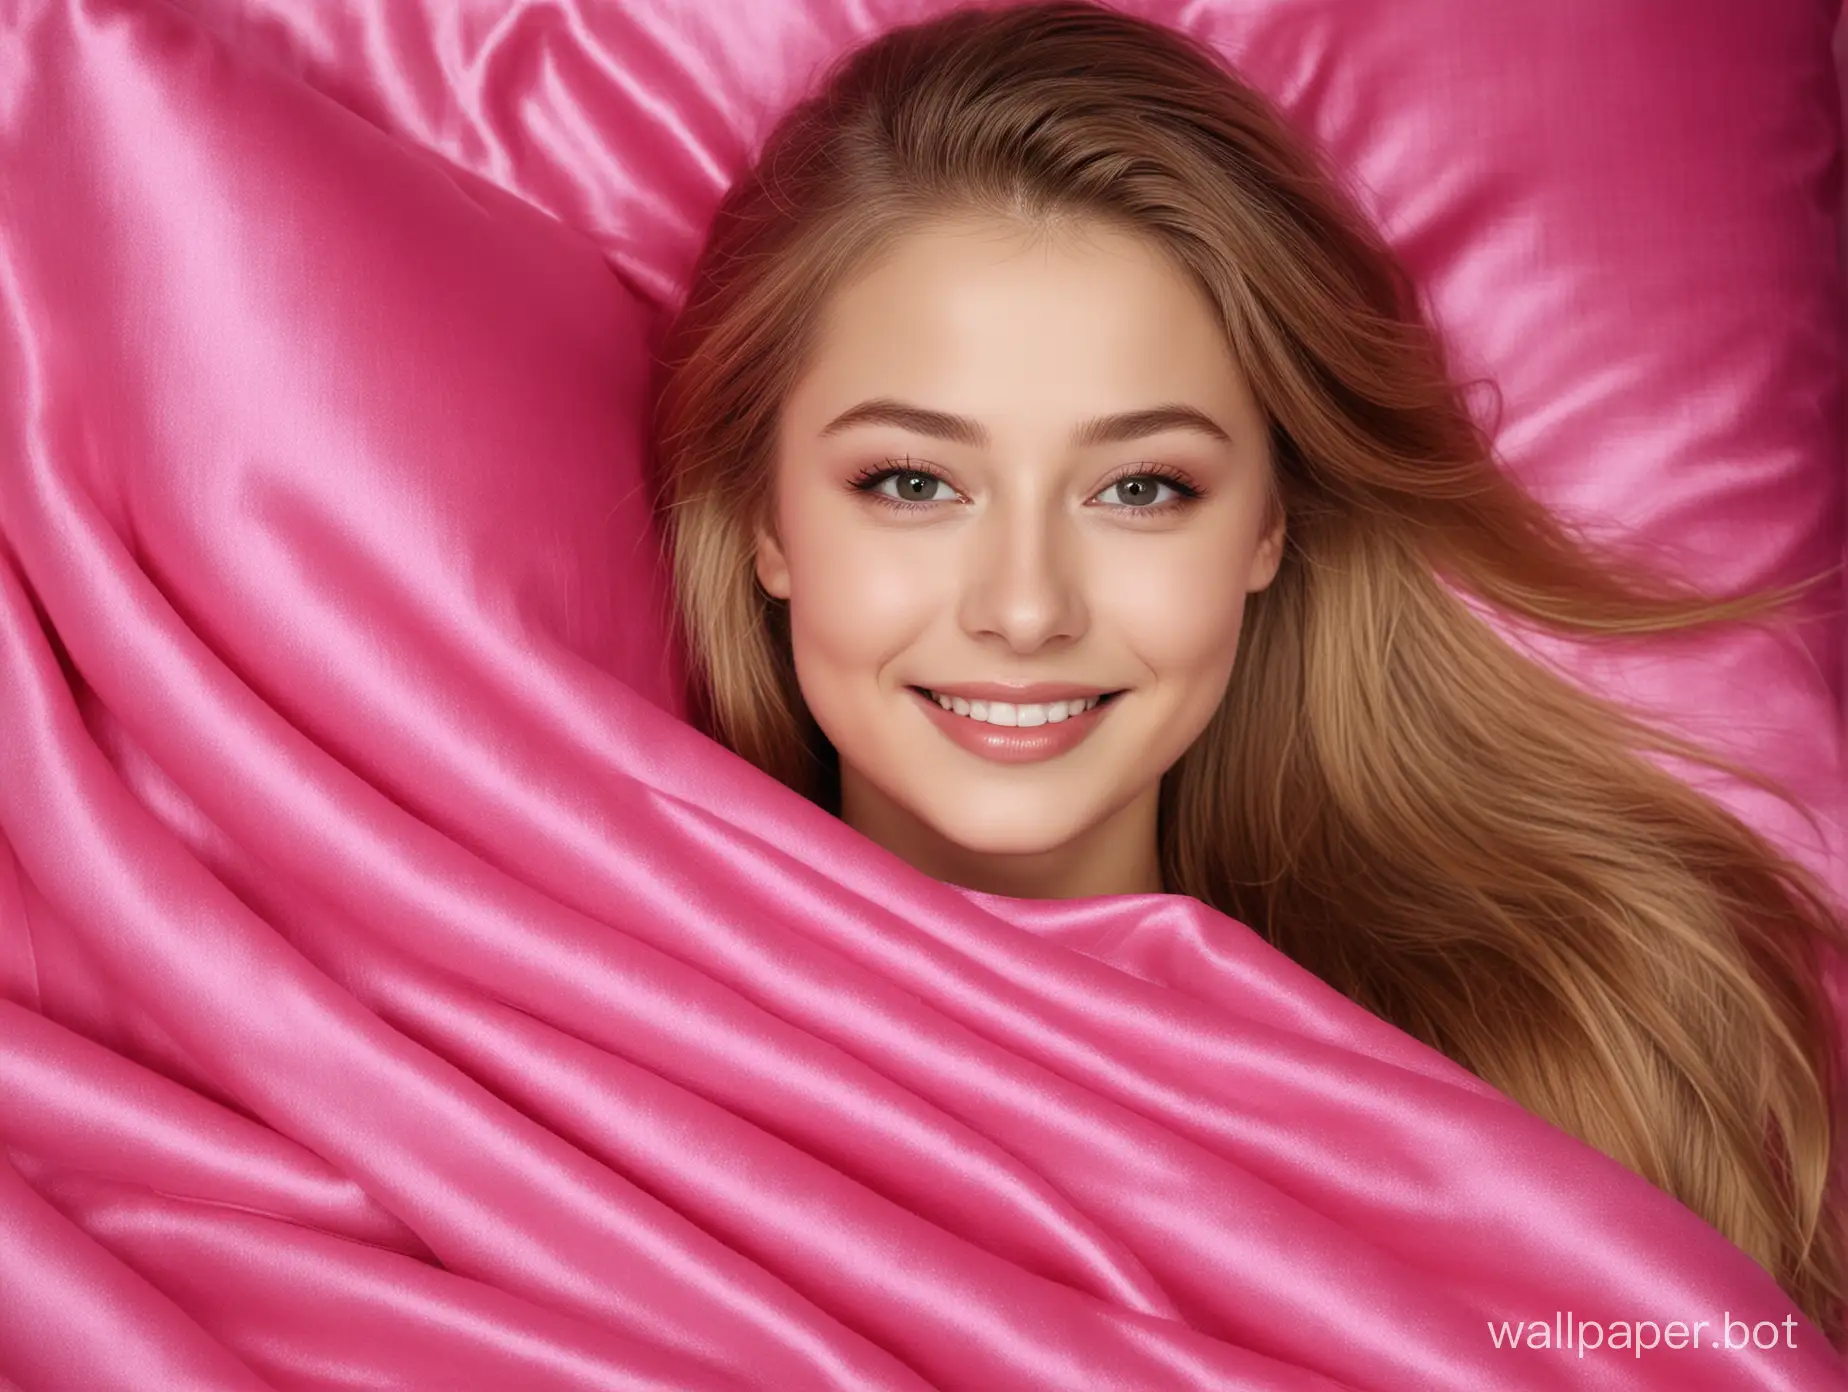 Yulia-Lipnitskaya-Smiling-in-Luxurious-Pink-Silk-Blanket